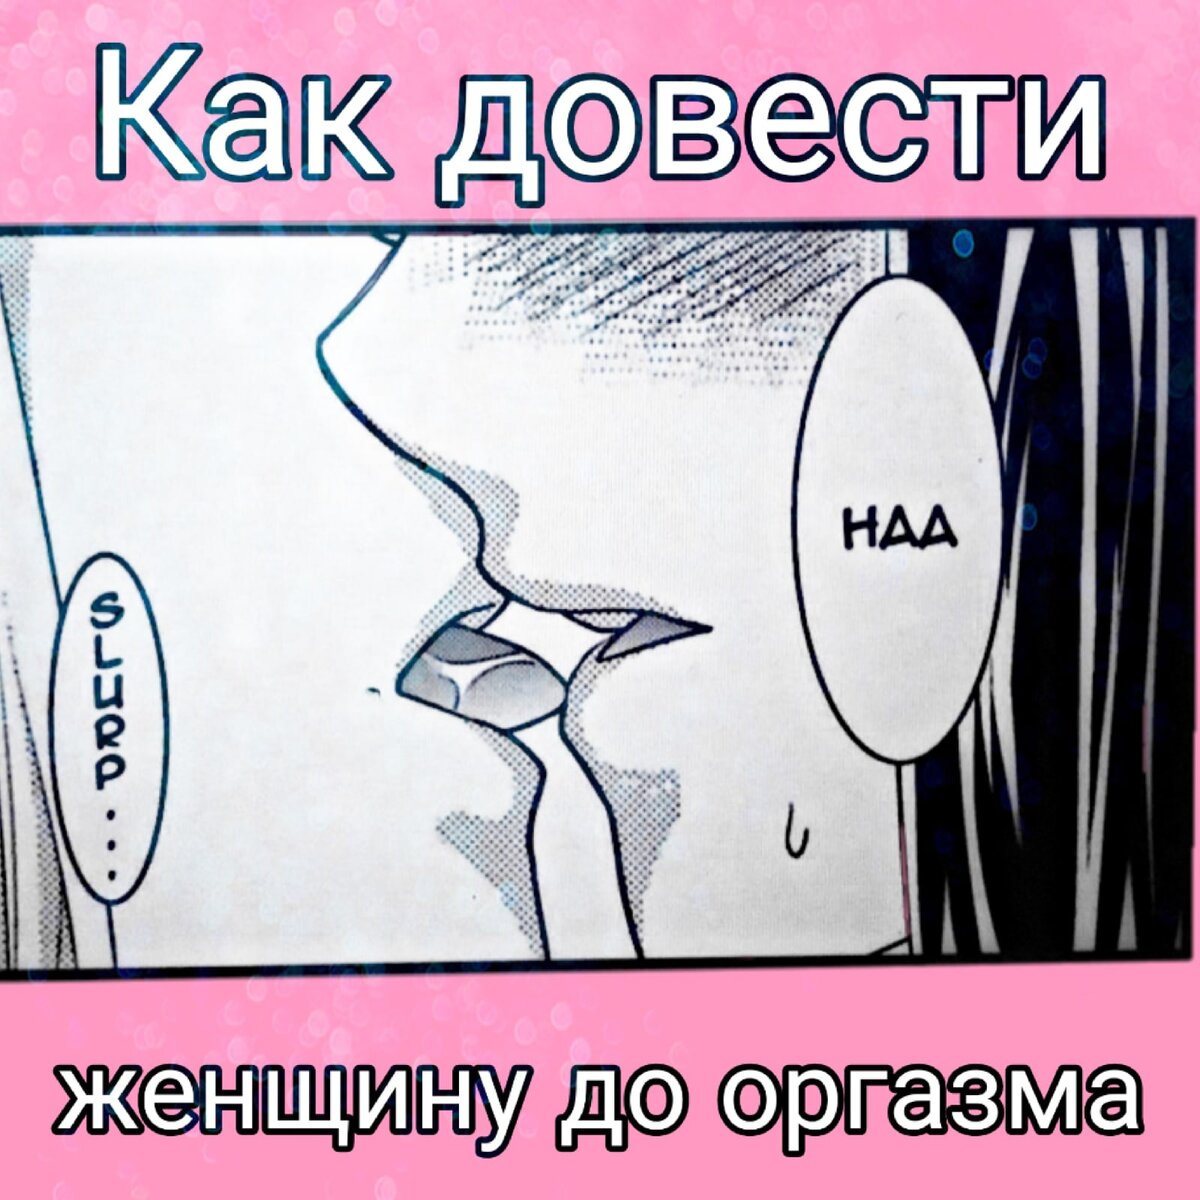 «Мокрый оргазм», или сквирт: как доставить девушке неземное удовольствие - 31 декабря - ecomamochka.ru